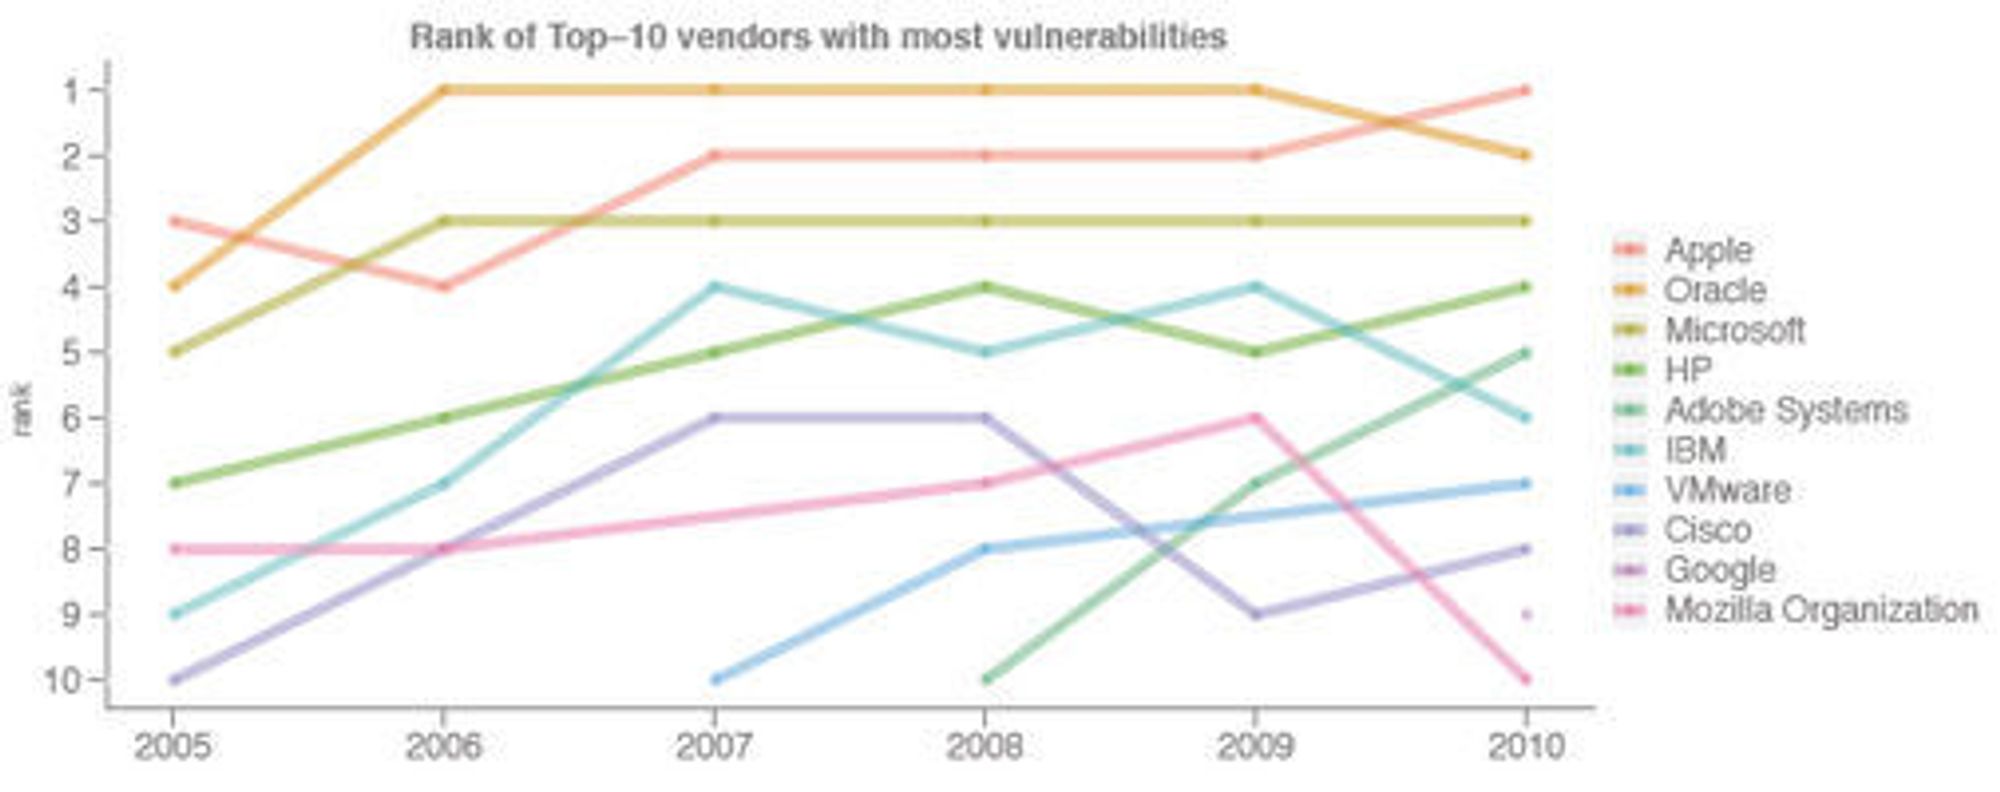 Programvareleverandørene med flest kjente sårbarheter mellom 2005 og 2010. Tallene for Oracle inkluderer også Sun og BEA. 